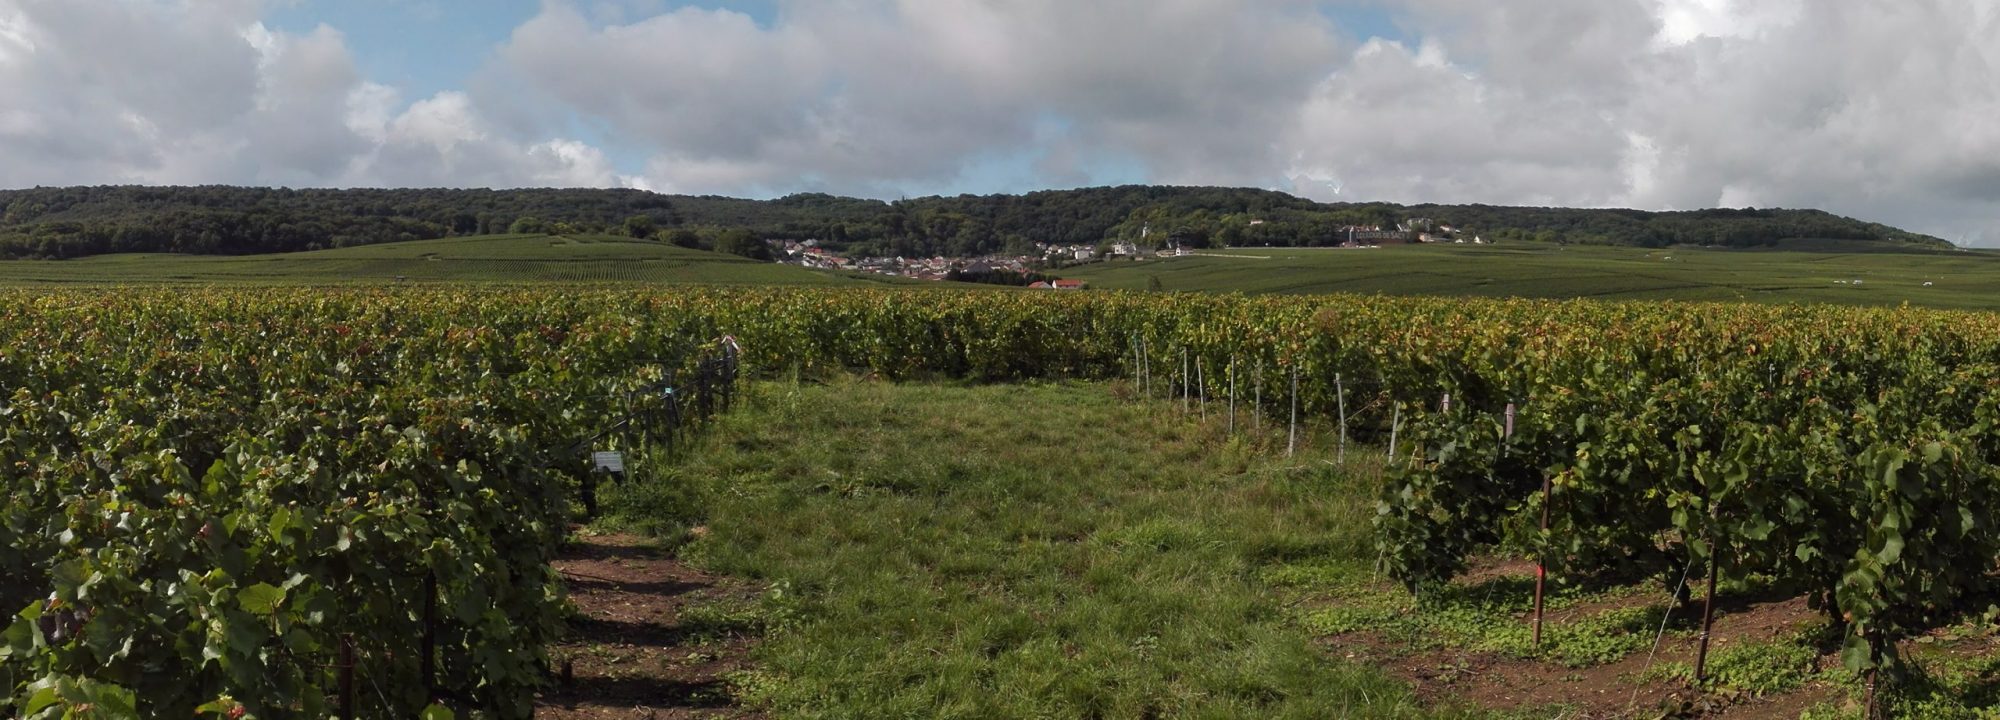 Notre Vignoble - Une viticulture respectueuse du Terroir et de l'environnement,<br />
au cœur d'un vignoble d'exception